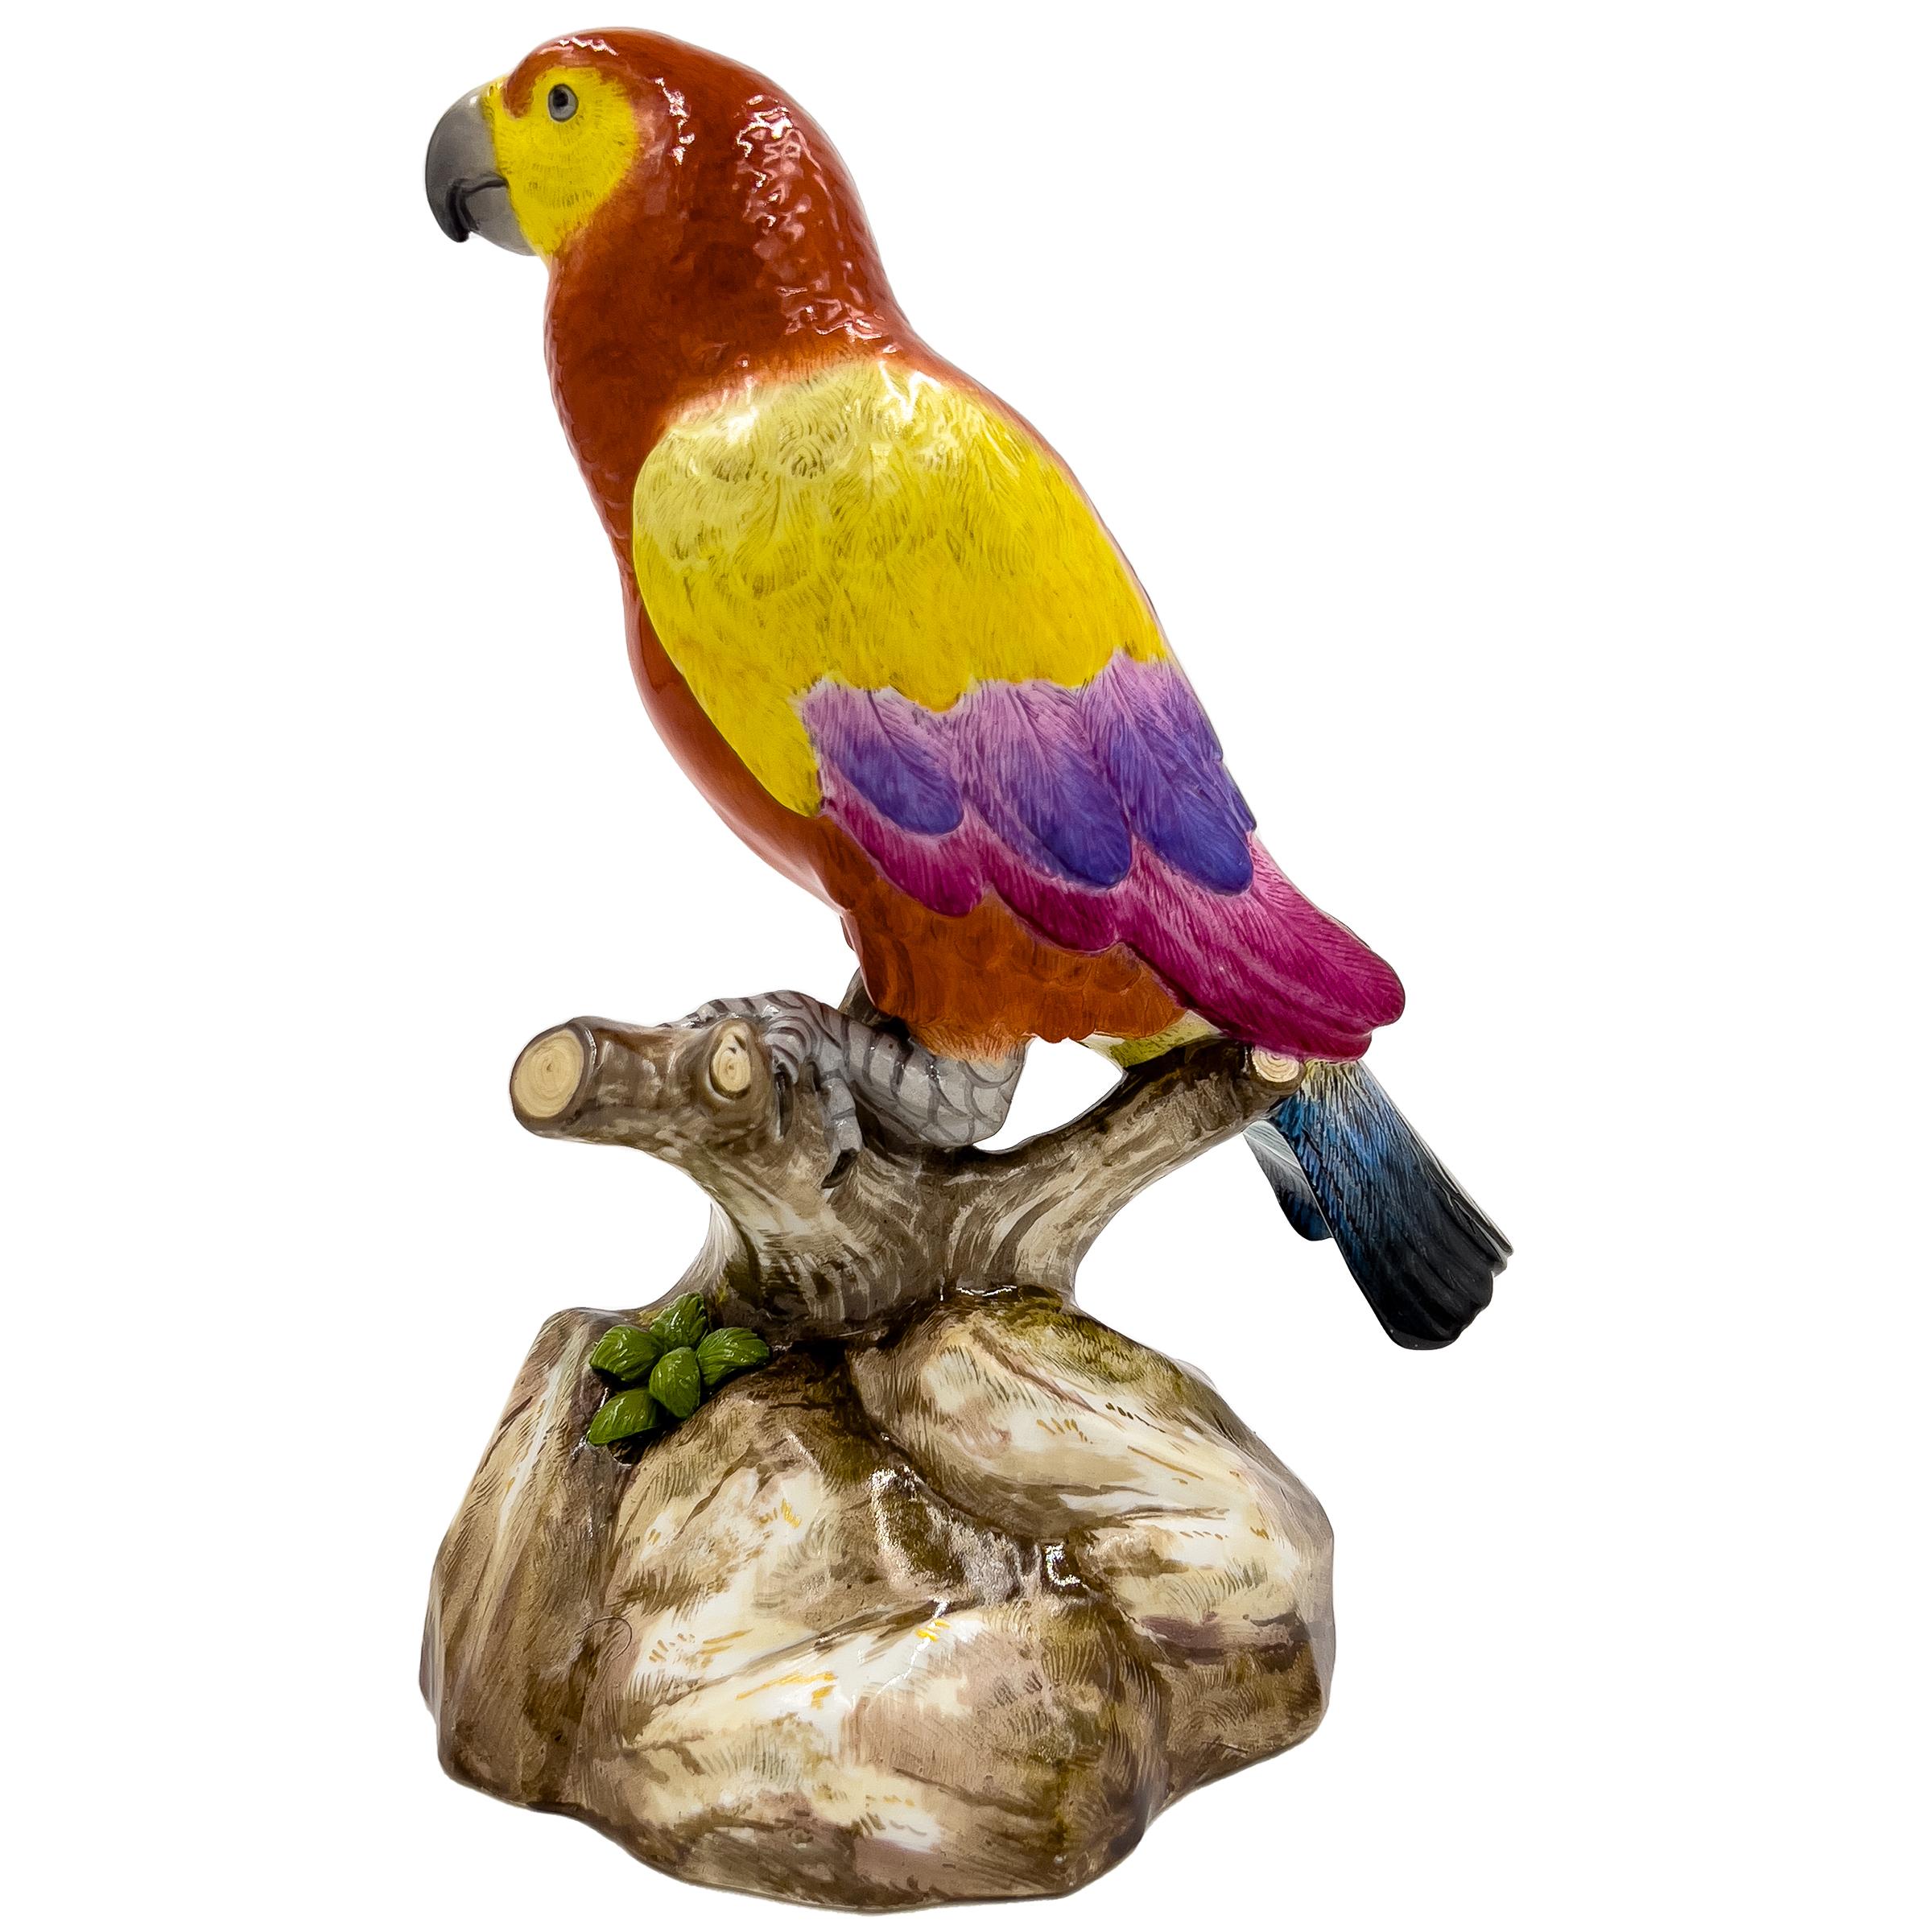 Figure de Meissen du 19e siècle représentant un perroquet sur une Branch, d'une grande vivacité et d'un grand réalisme. Ce chef-d'œuvre méticuleusement réalisé présente des détails multicolores et porte la signature authentique de Meissen sur sa